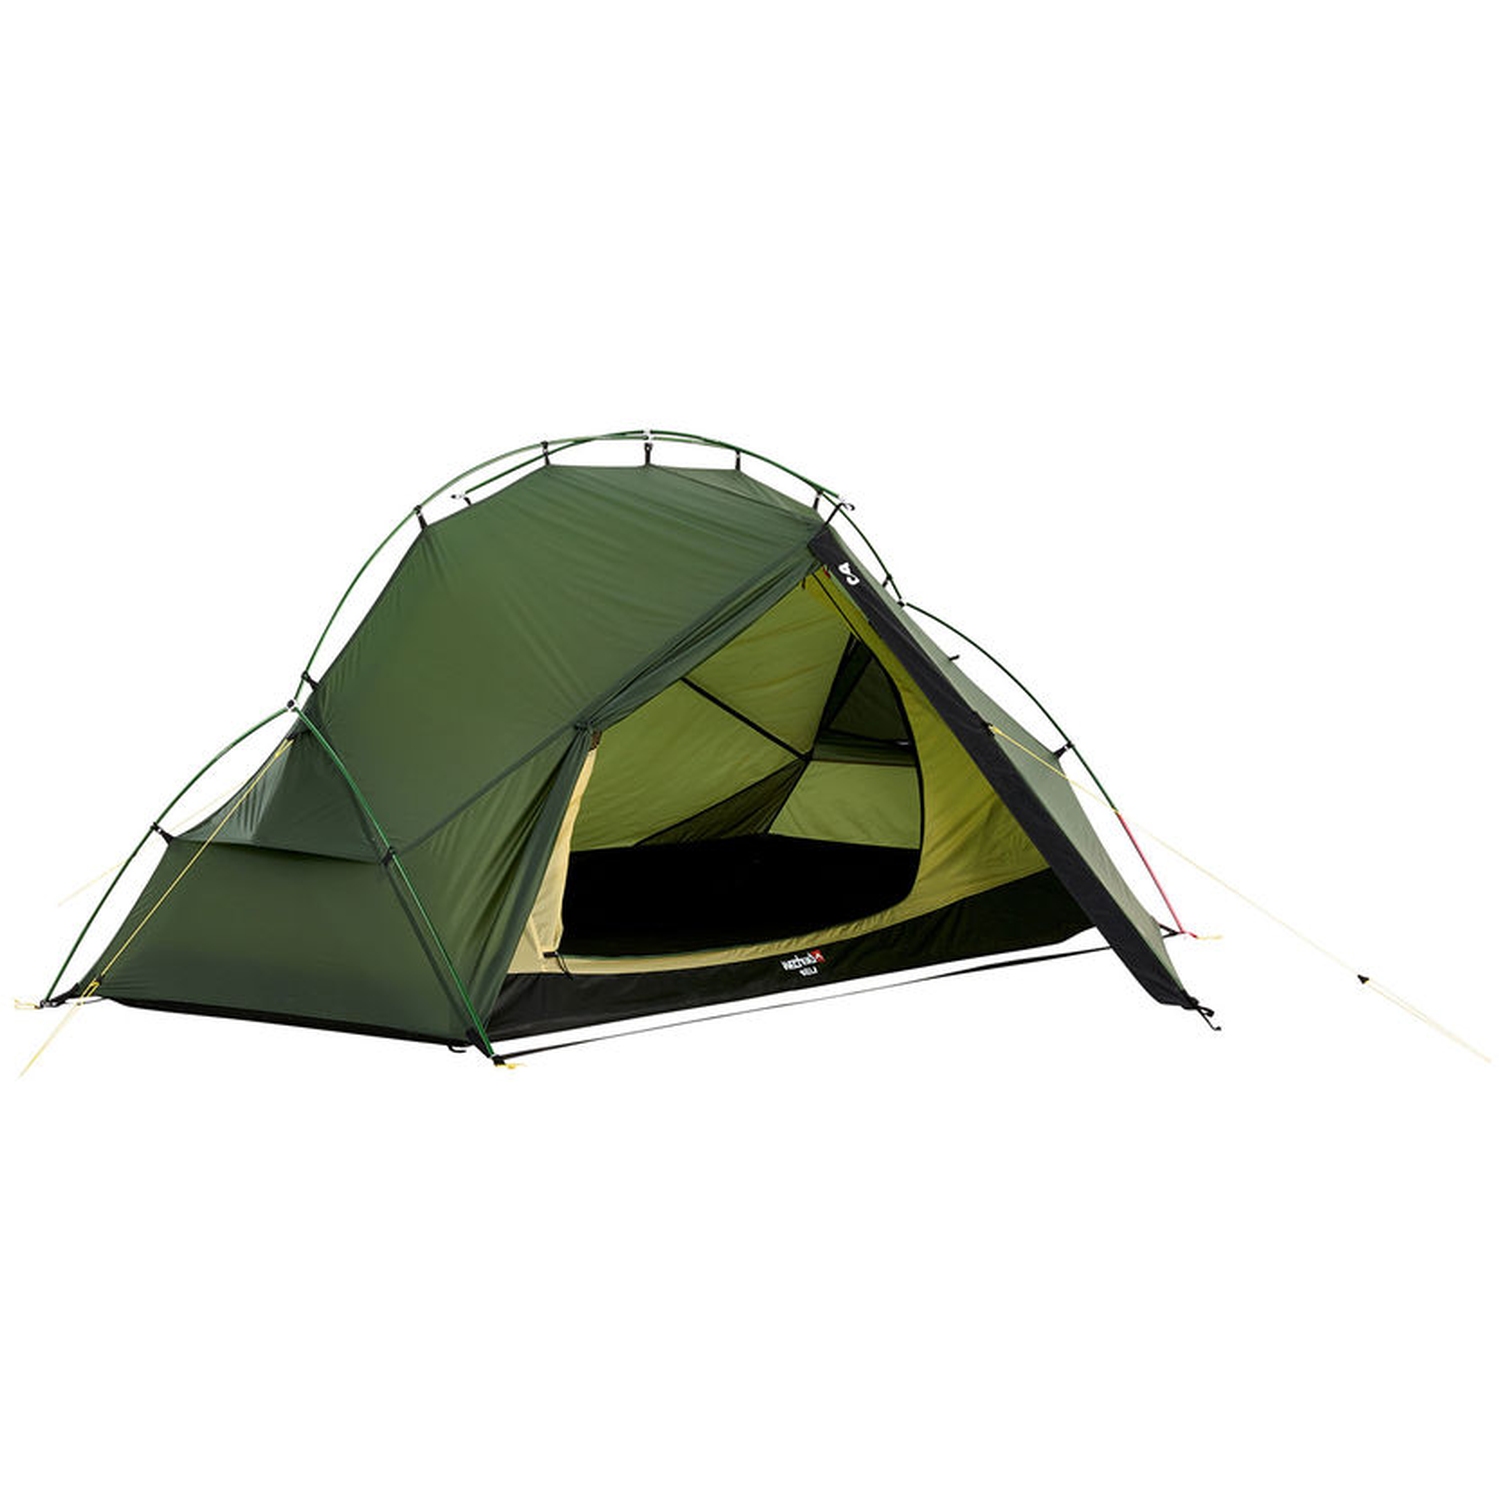 Productfoto van Wechsel Bella Tent - groen